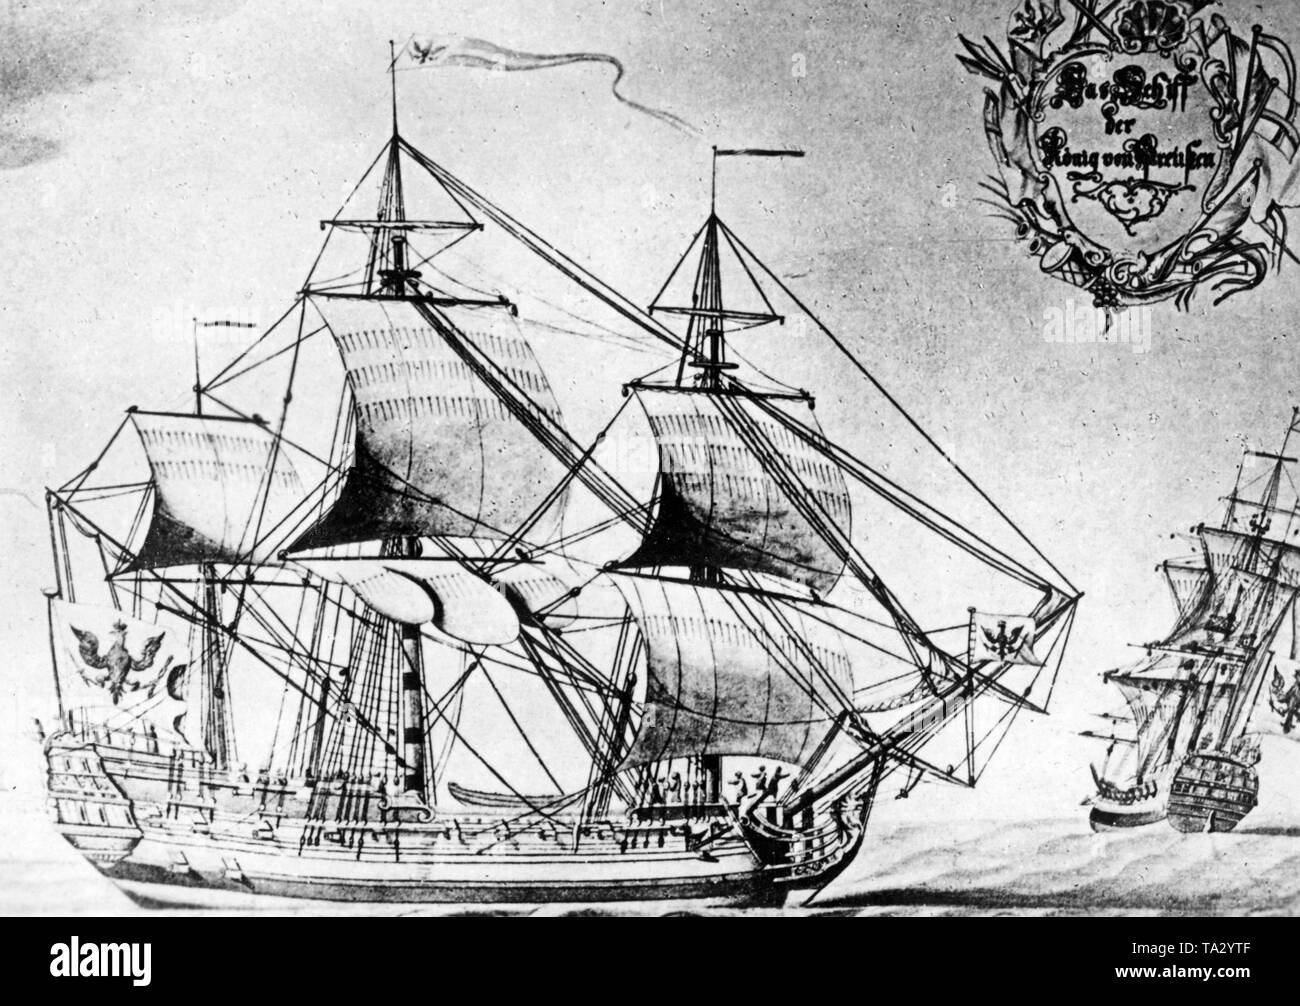 Das Segelschiff "Koenig von Preussen" war eines von zwei Schiffen der Emder Ostasiatische Handelskompanie (East Asiatic Company in Emden), unternahm Reisen nach Asien. Stockfoto